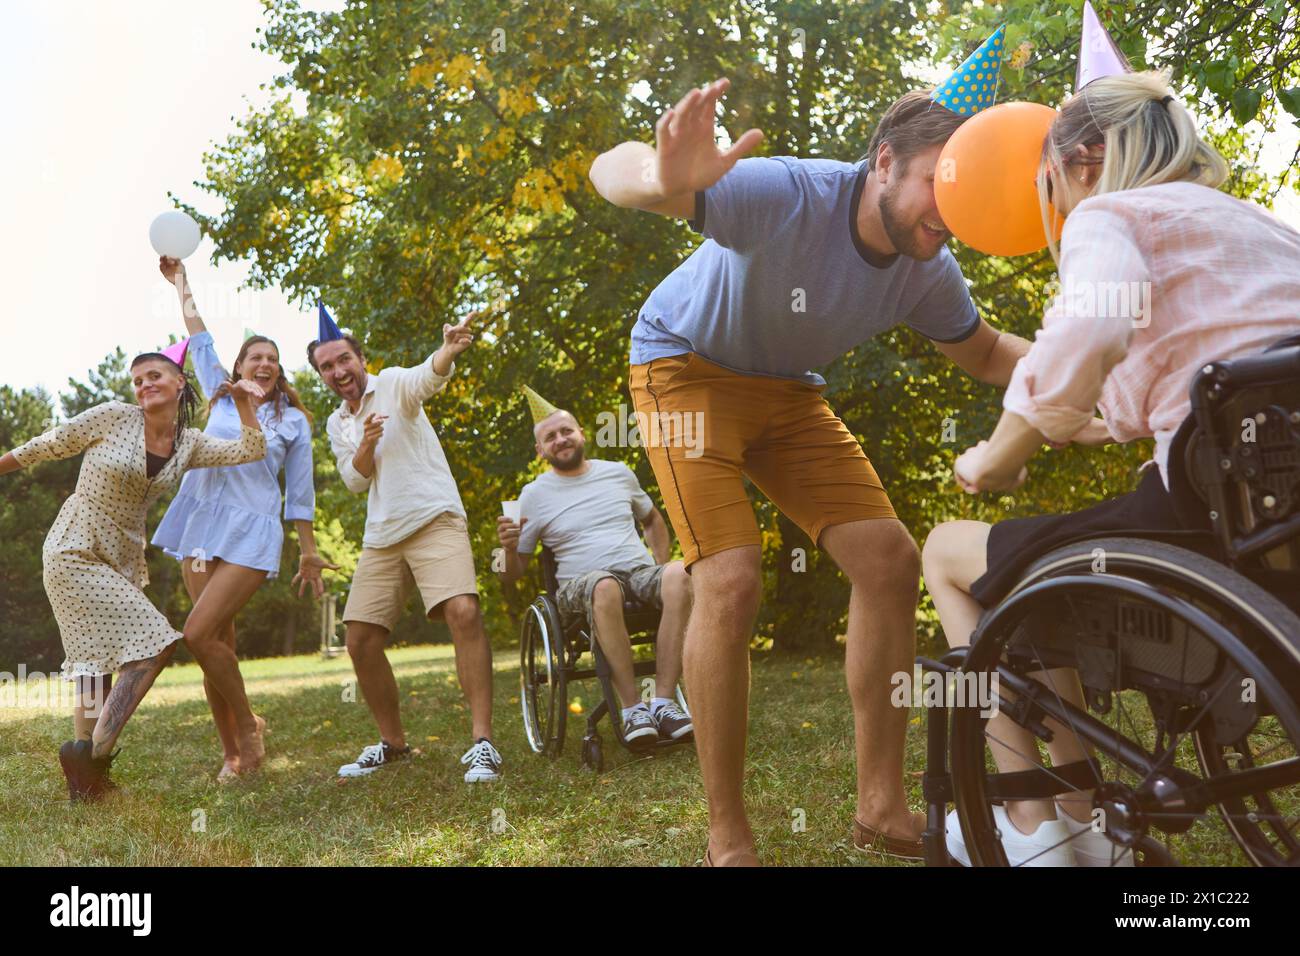 Un gruppo eterogeneo di amici, tra cui una persona su sedia a rotelle, festeggia all'aperto con gioia e cappelli da festa. Foto Stock